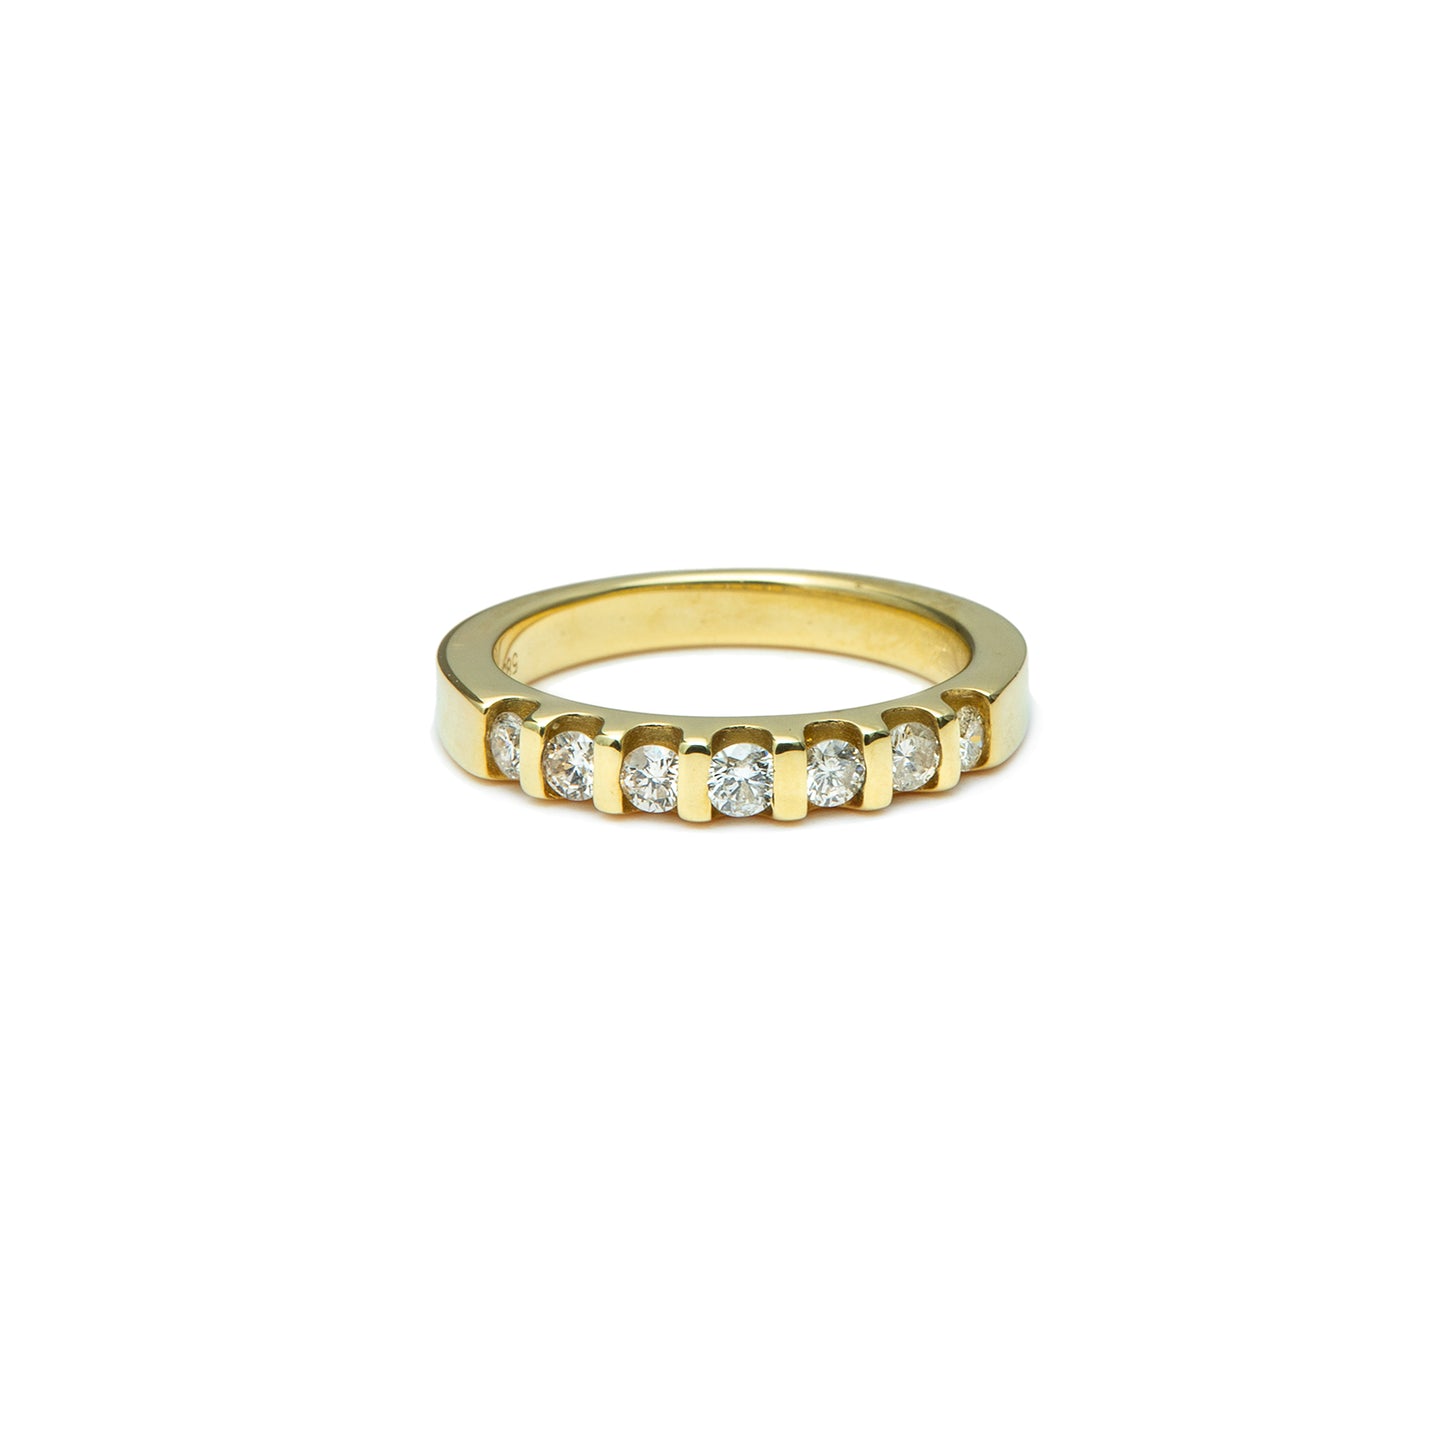 Half memory diamond ring yellow gold 14K 585 women's jewelry women's ring gold ring 